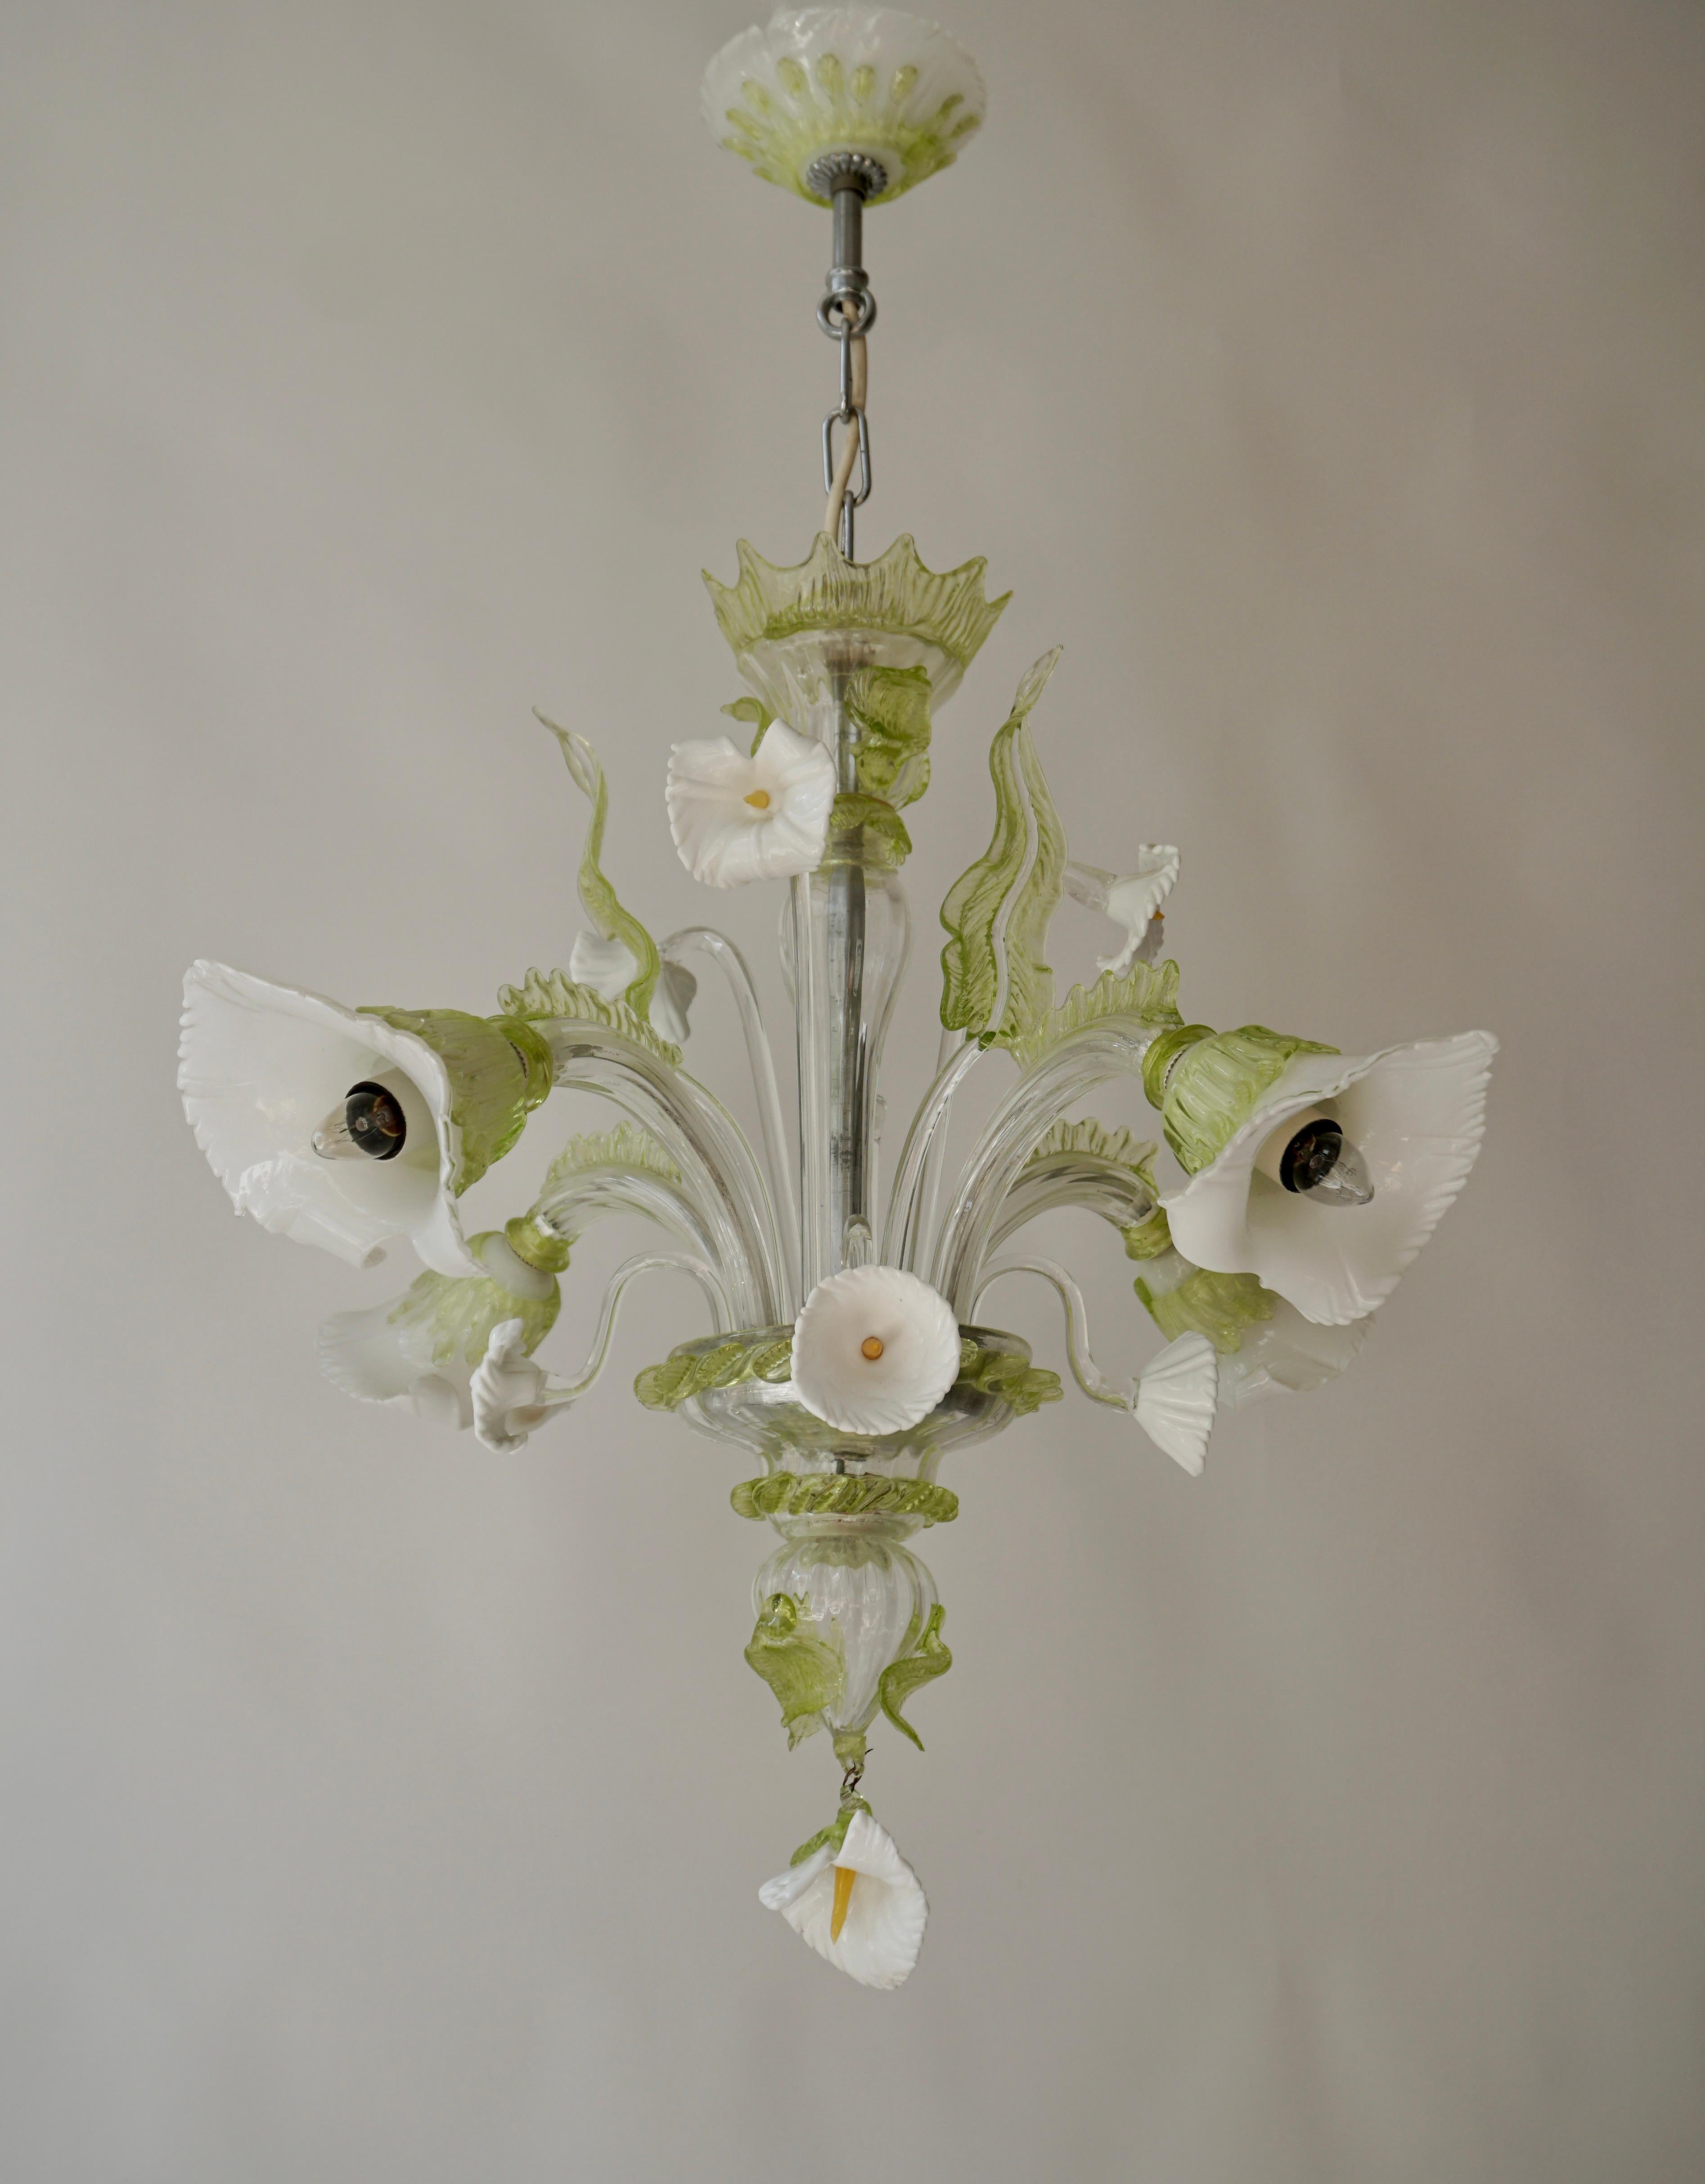 Elegant lustre décoratif à 4 branches en verre de Murano, de style vénitien.

Couleur vert/blanc avec des fleurs.

Diamètre 60 cm.
Hauteur de la fixation 55 cm.
Hauteur totale 75 cm.